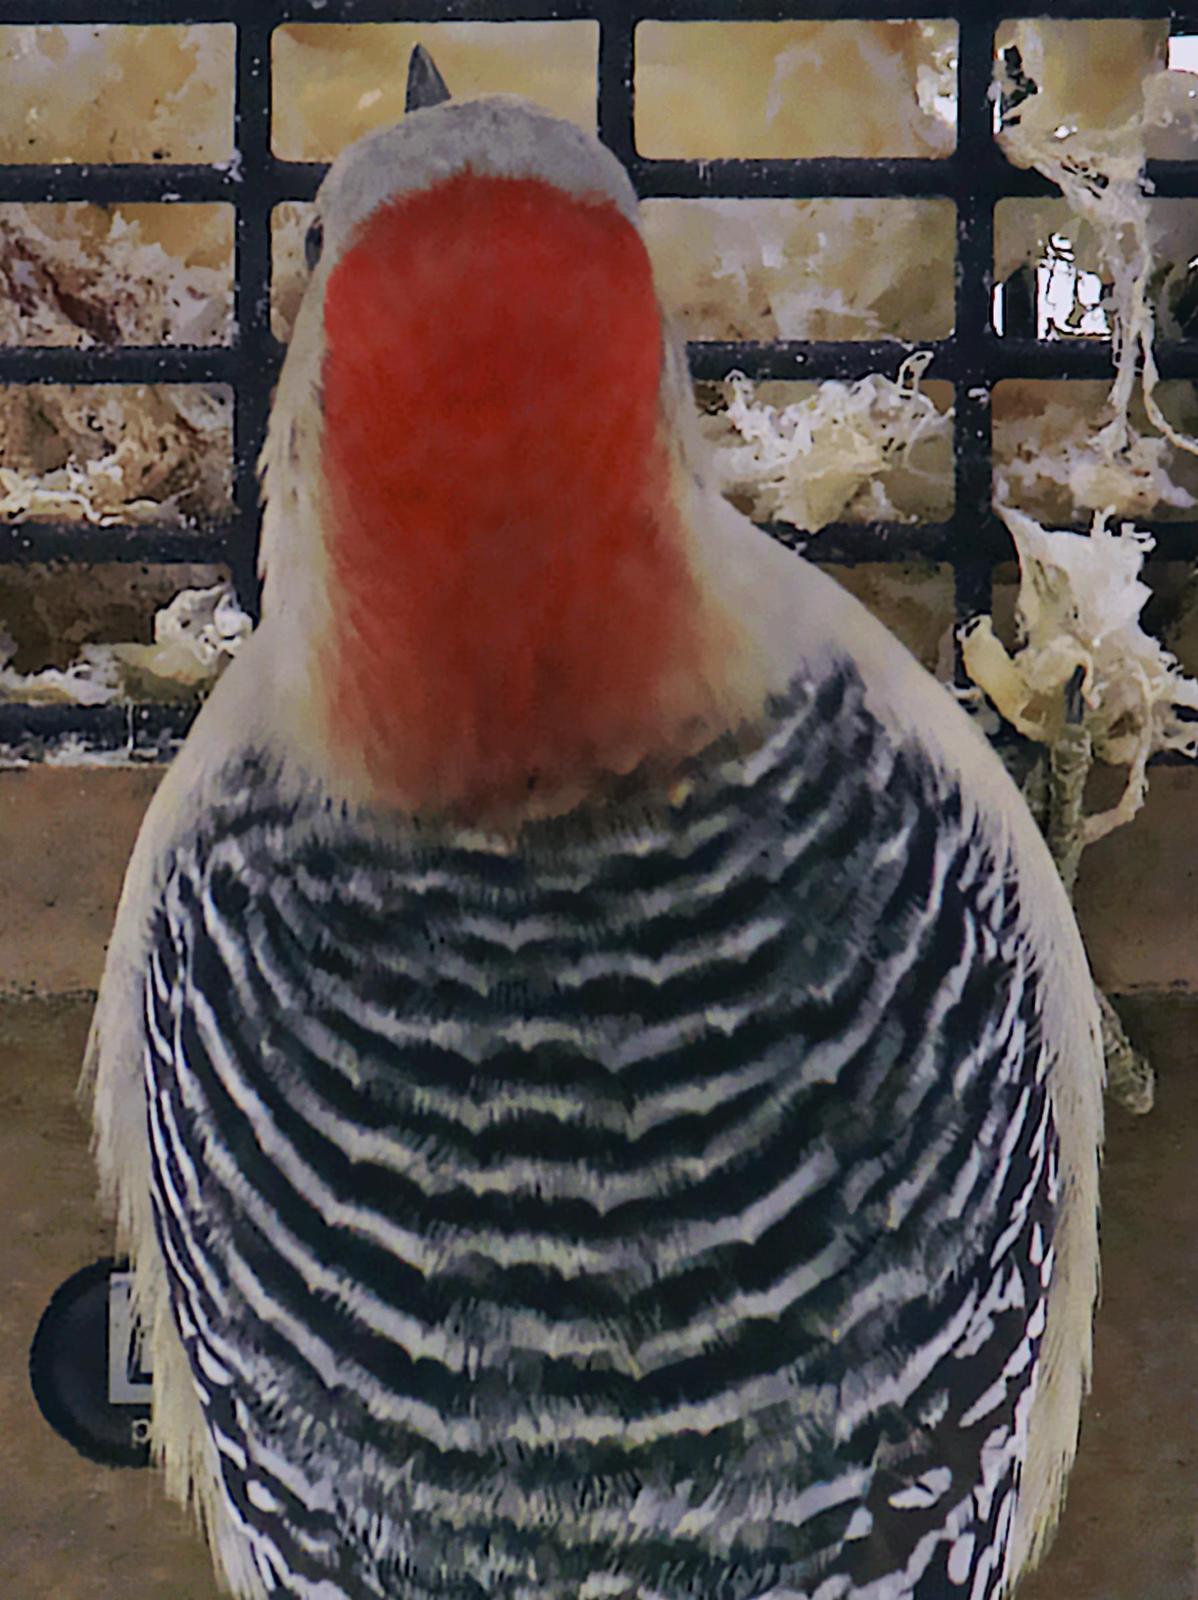 Red-bellied Woodpecker Photo by Dan Tallman